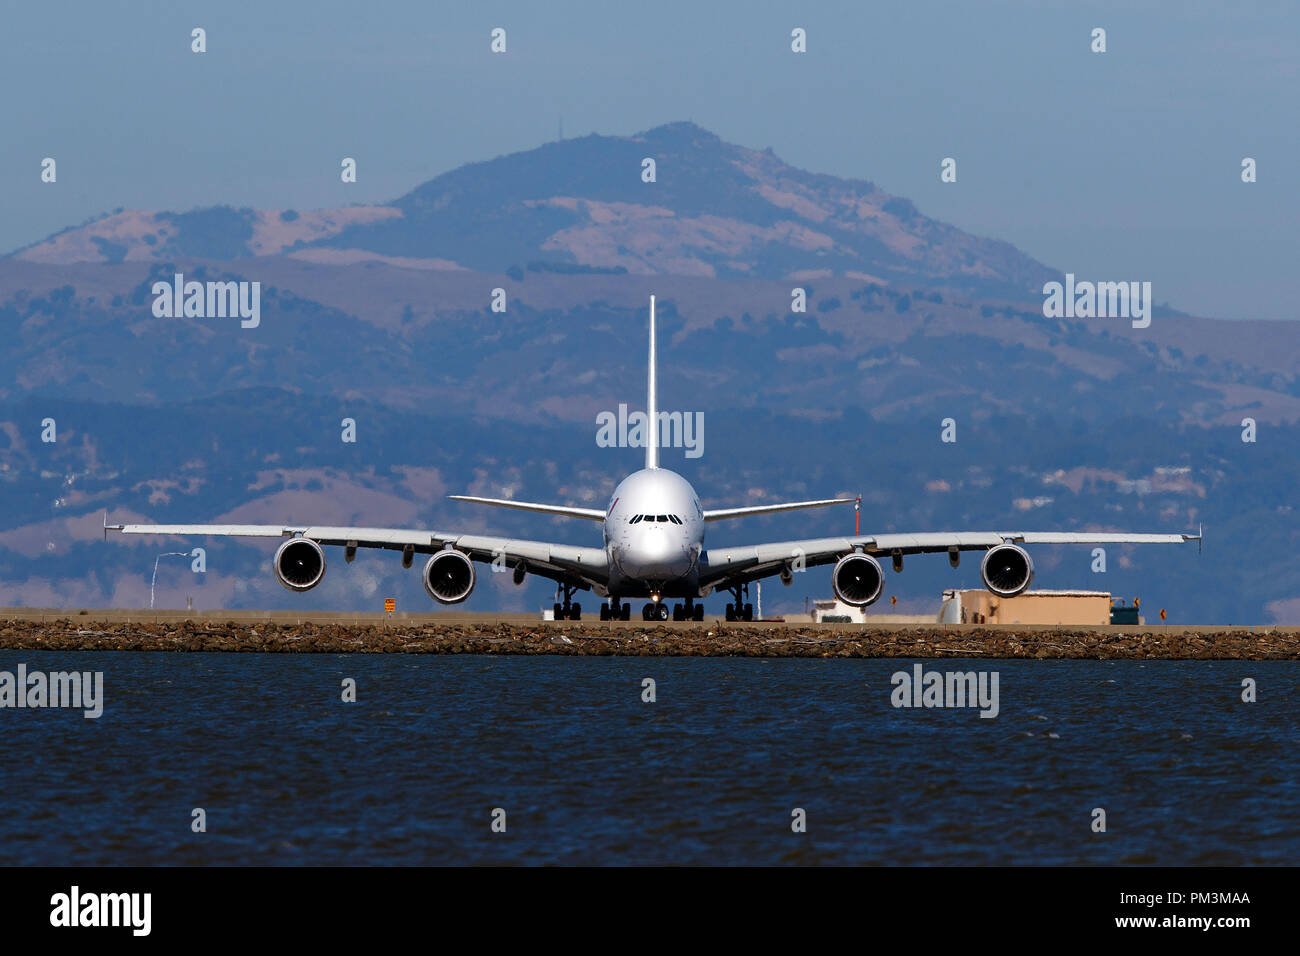 Airbus A380-861 (F-HPJG) exploités par Air France au sol, l'Aéroport International de San Francisco (KSFO), San Francisco, Californie, États-Unis d'Amérique Banque D'Images